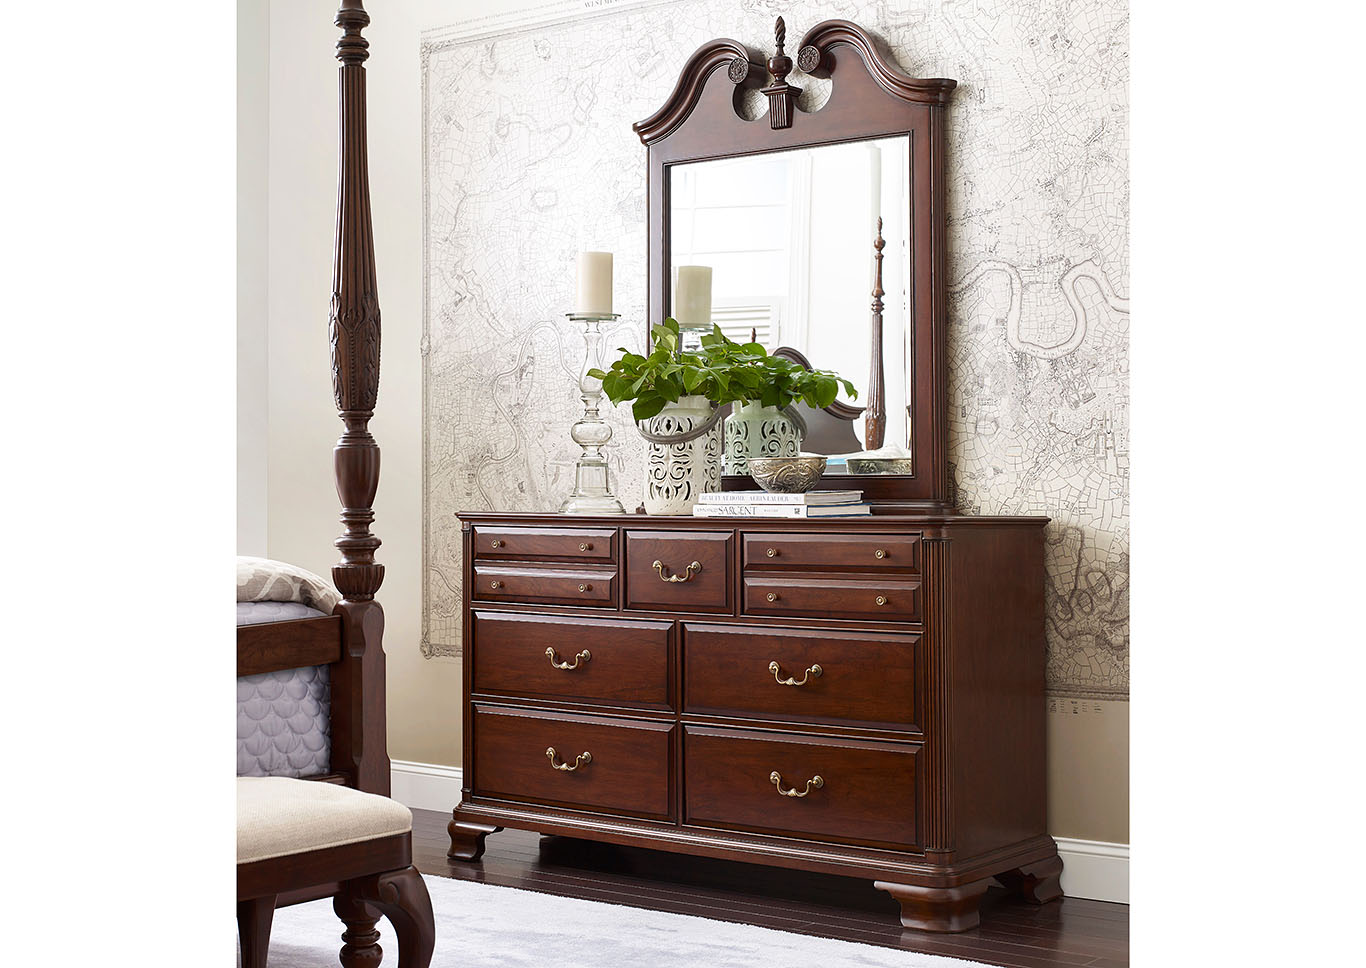 Hadleigh Classic Cherry Pediment Dresser & Mirror,Kincaid